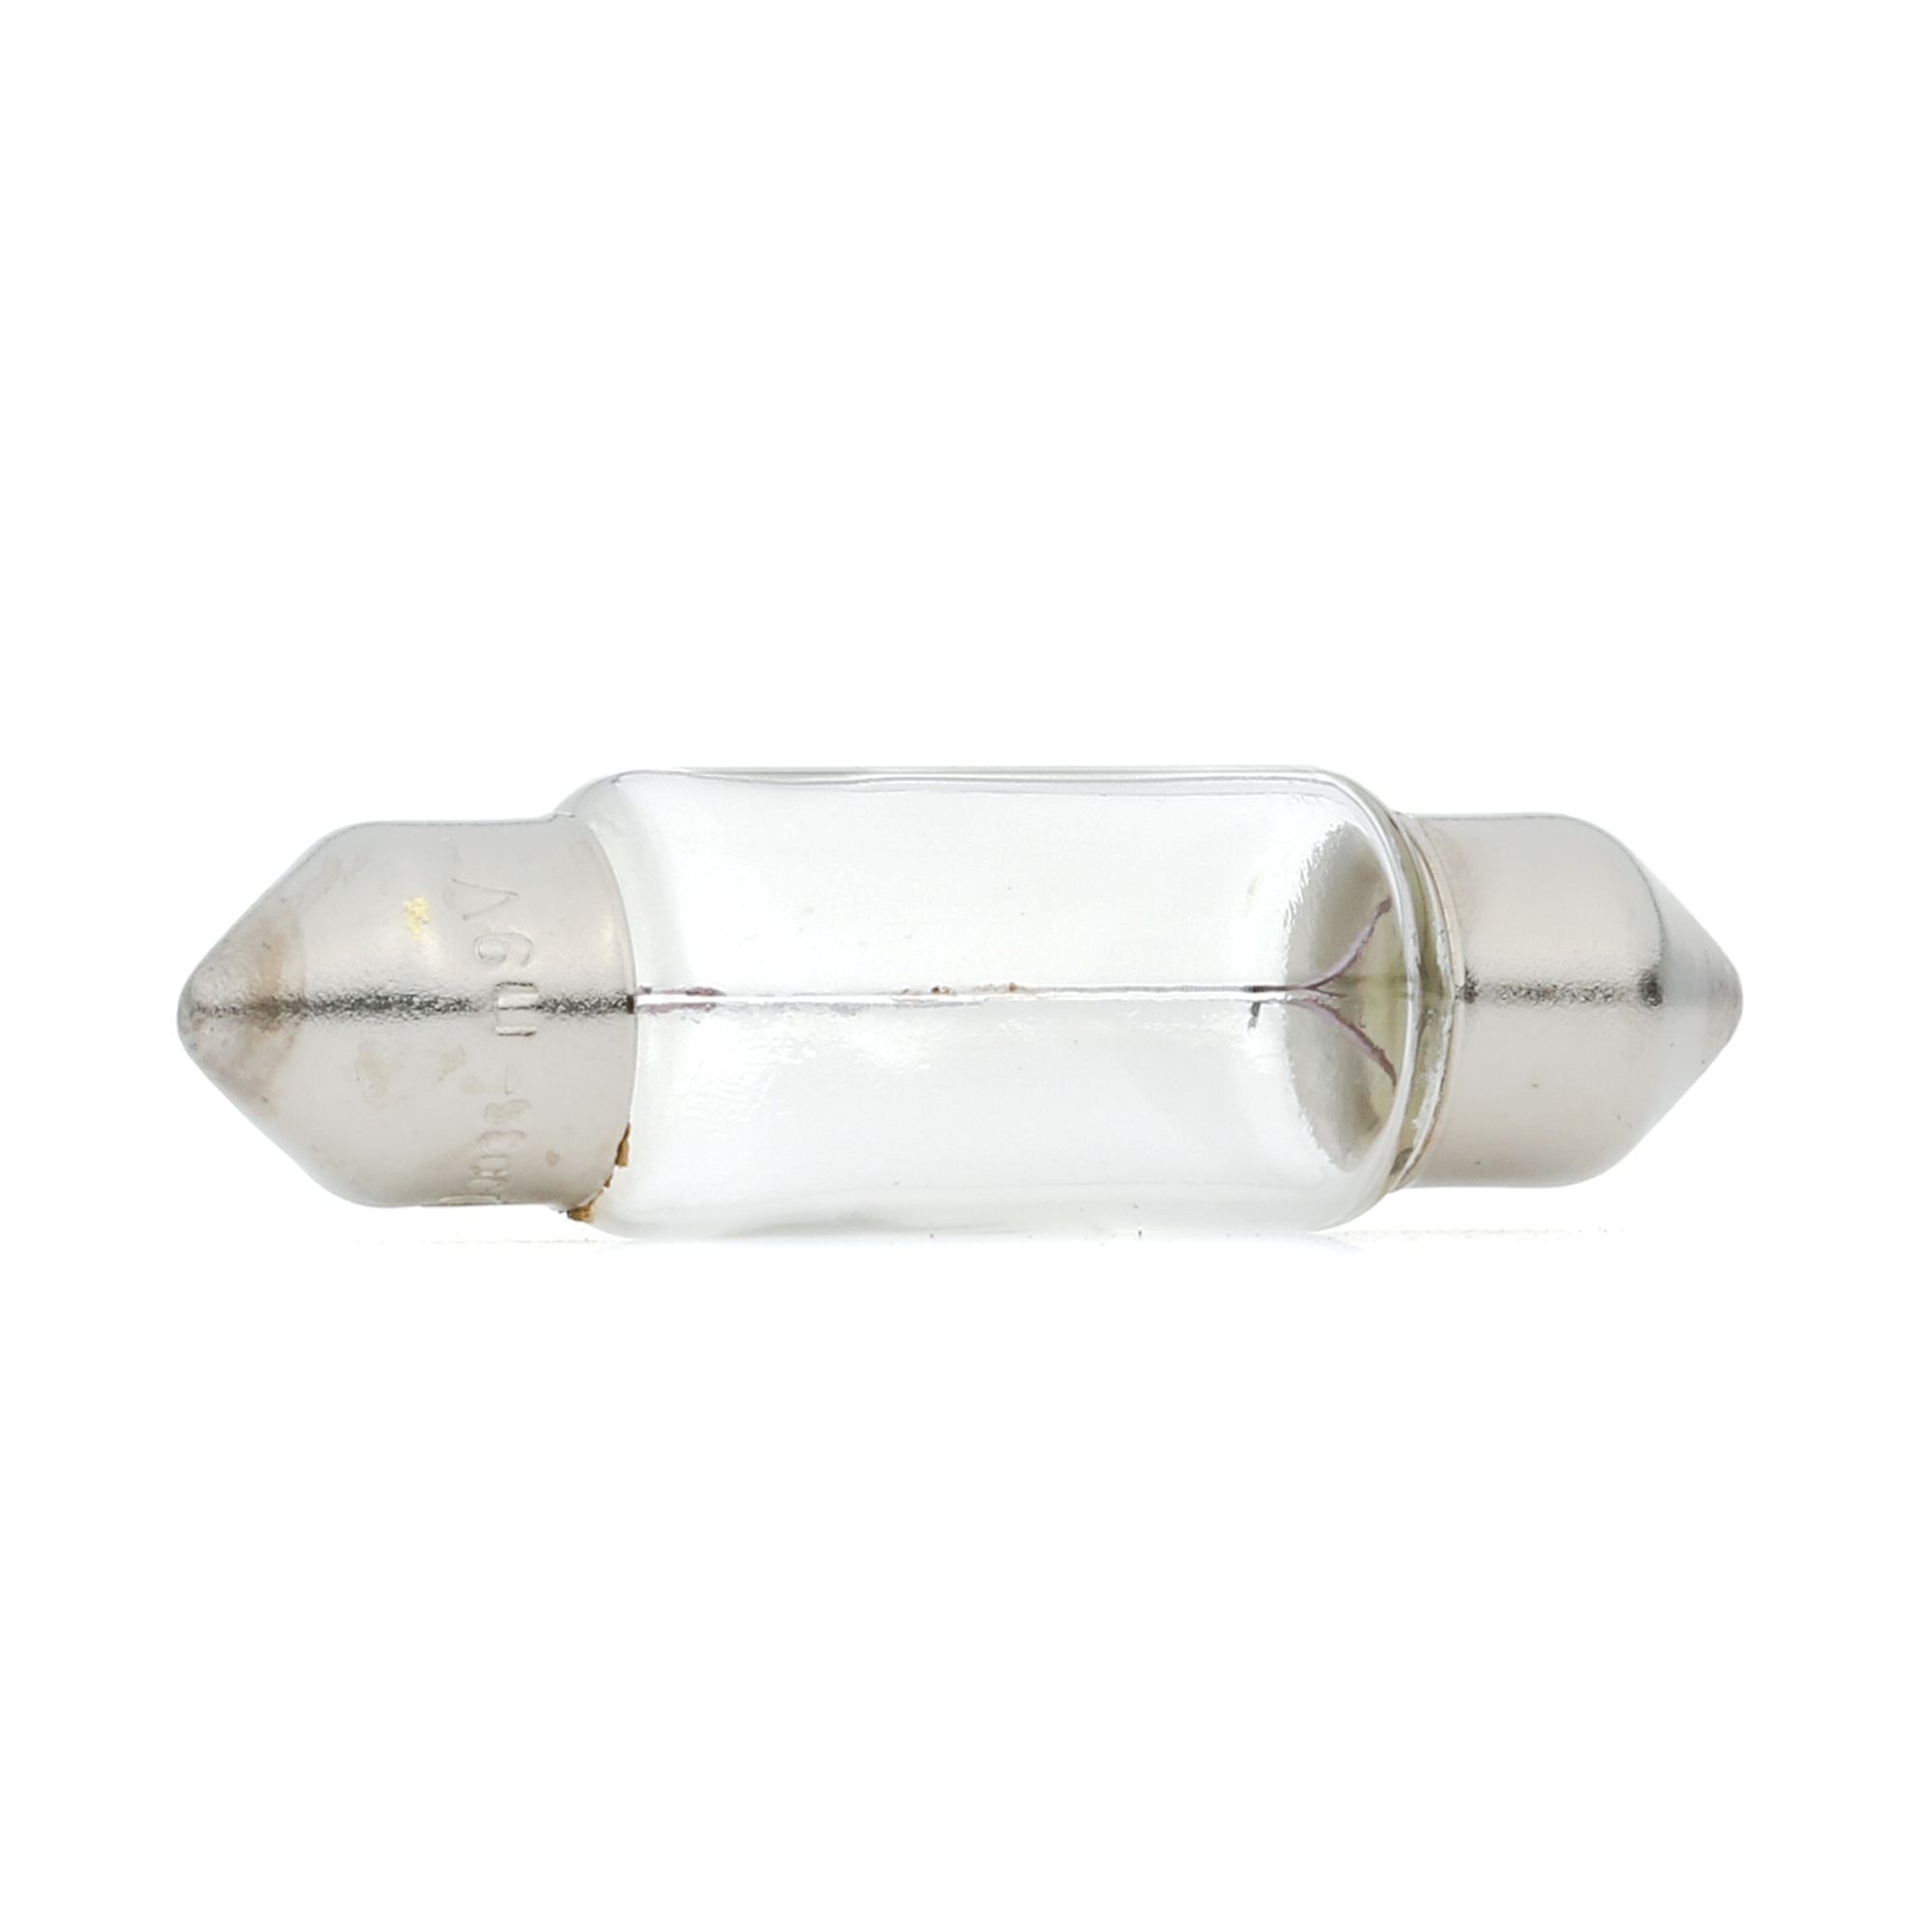 NEOLUX®: Original Heckleuchten Glühlampe N239 ()